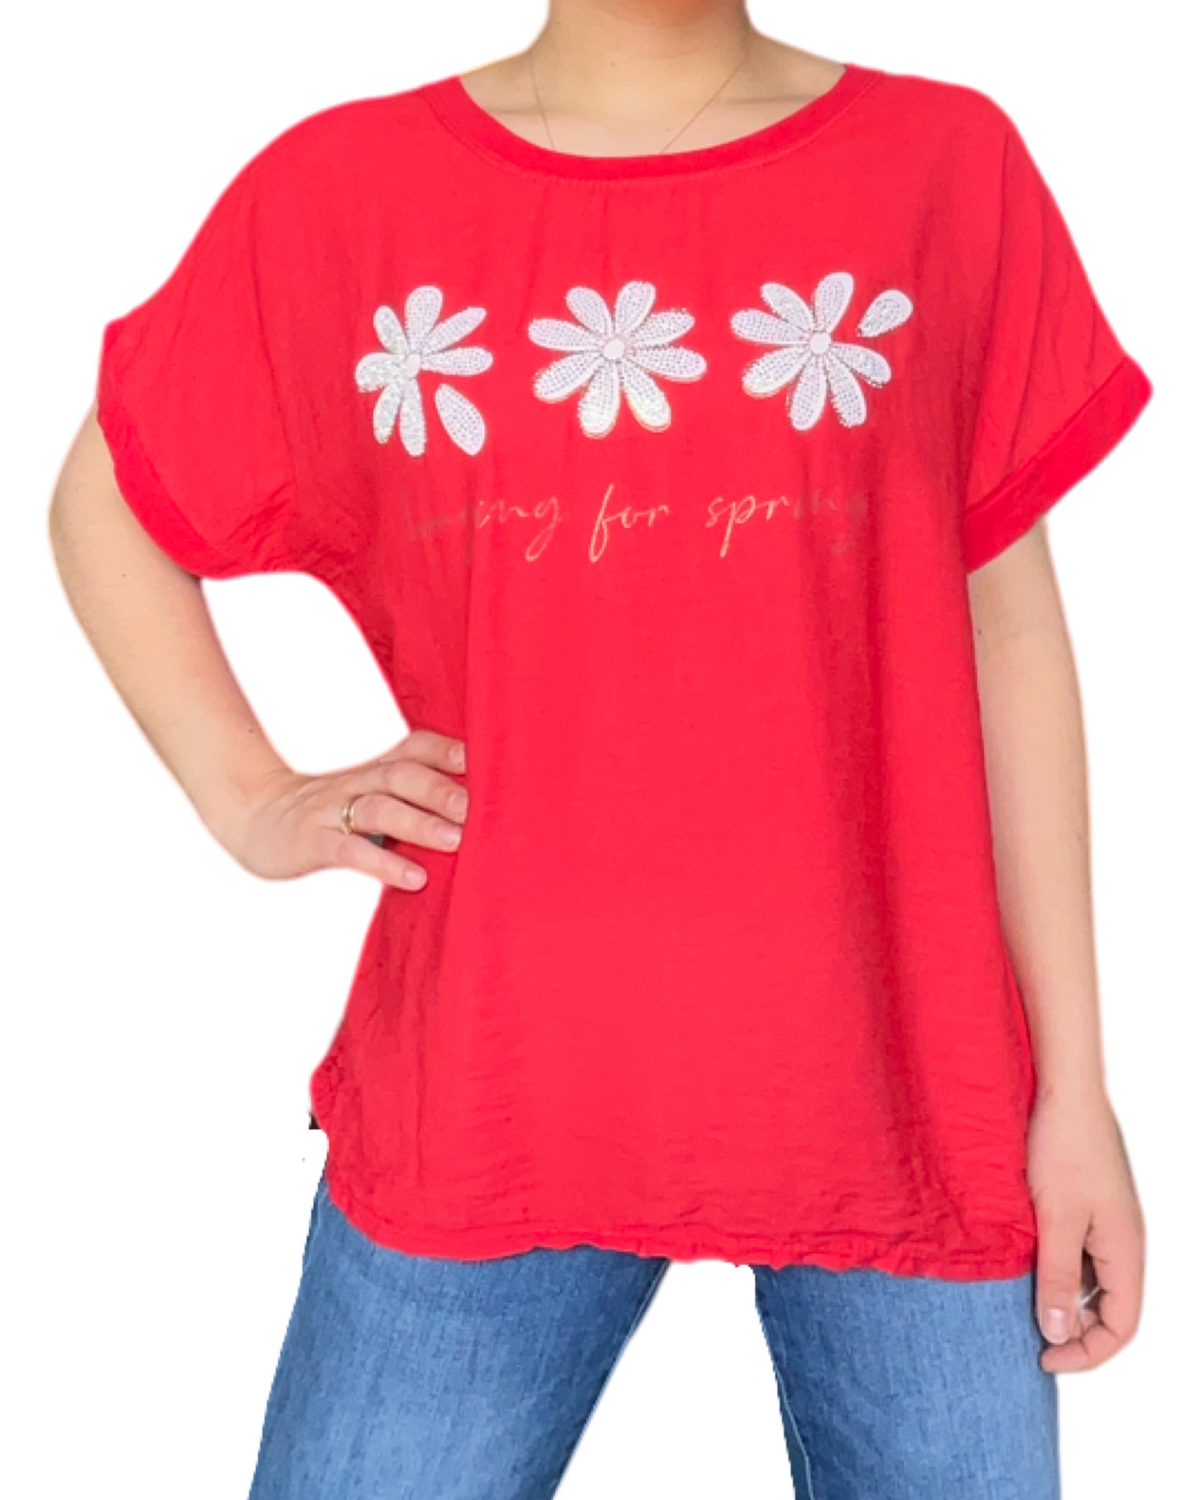 T-shirt rouge pour femme avec imprimé de trois fleurs blanches.